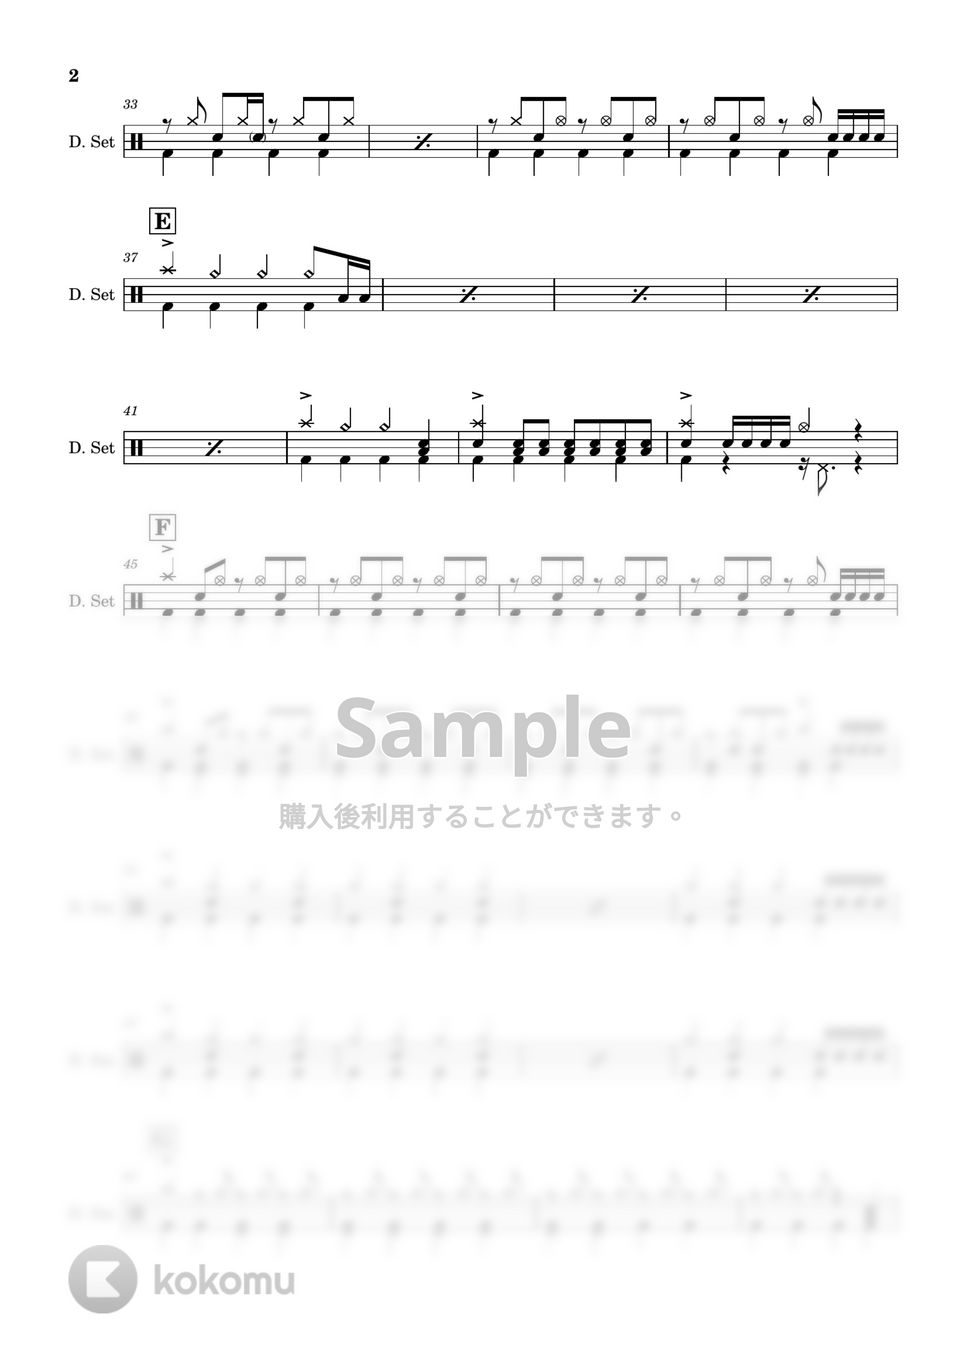 KANA-BOON - 【ドラム楽譜】 ないものねだり / KANA-BOON - Naimononedari / KANA-BOON 【DrumScore】 by Cookie's Drum Score